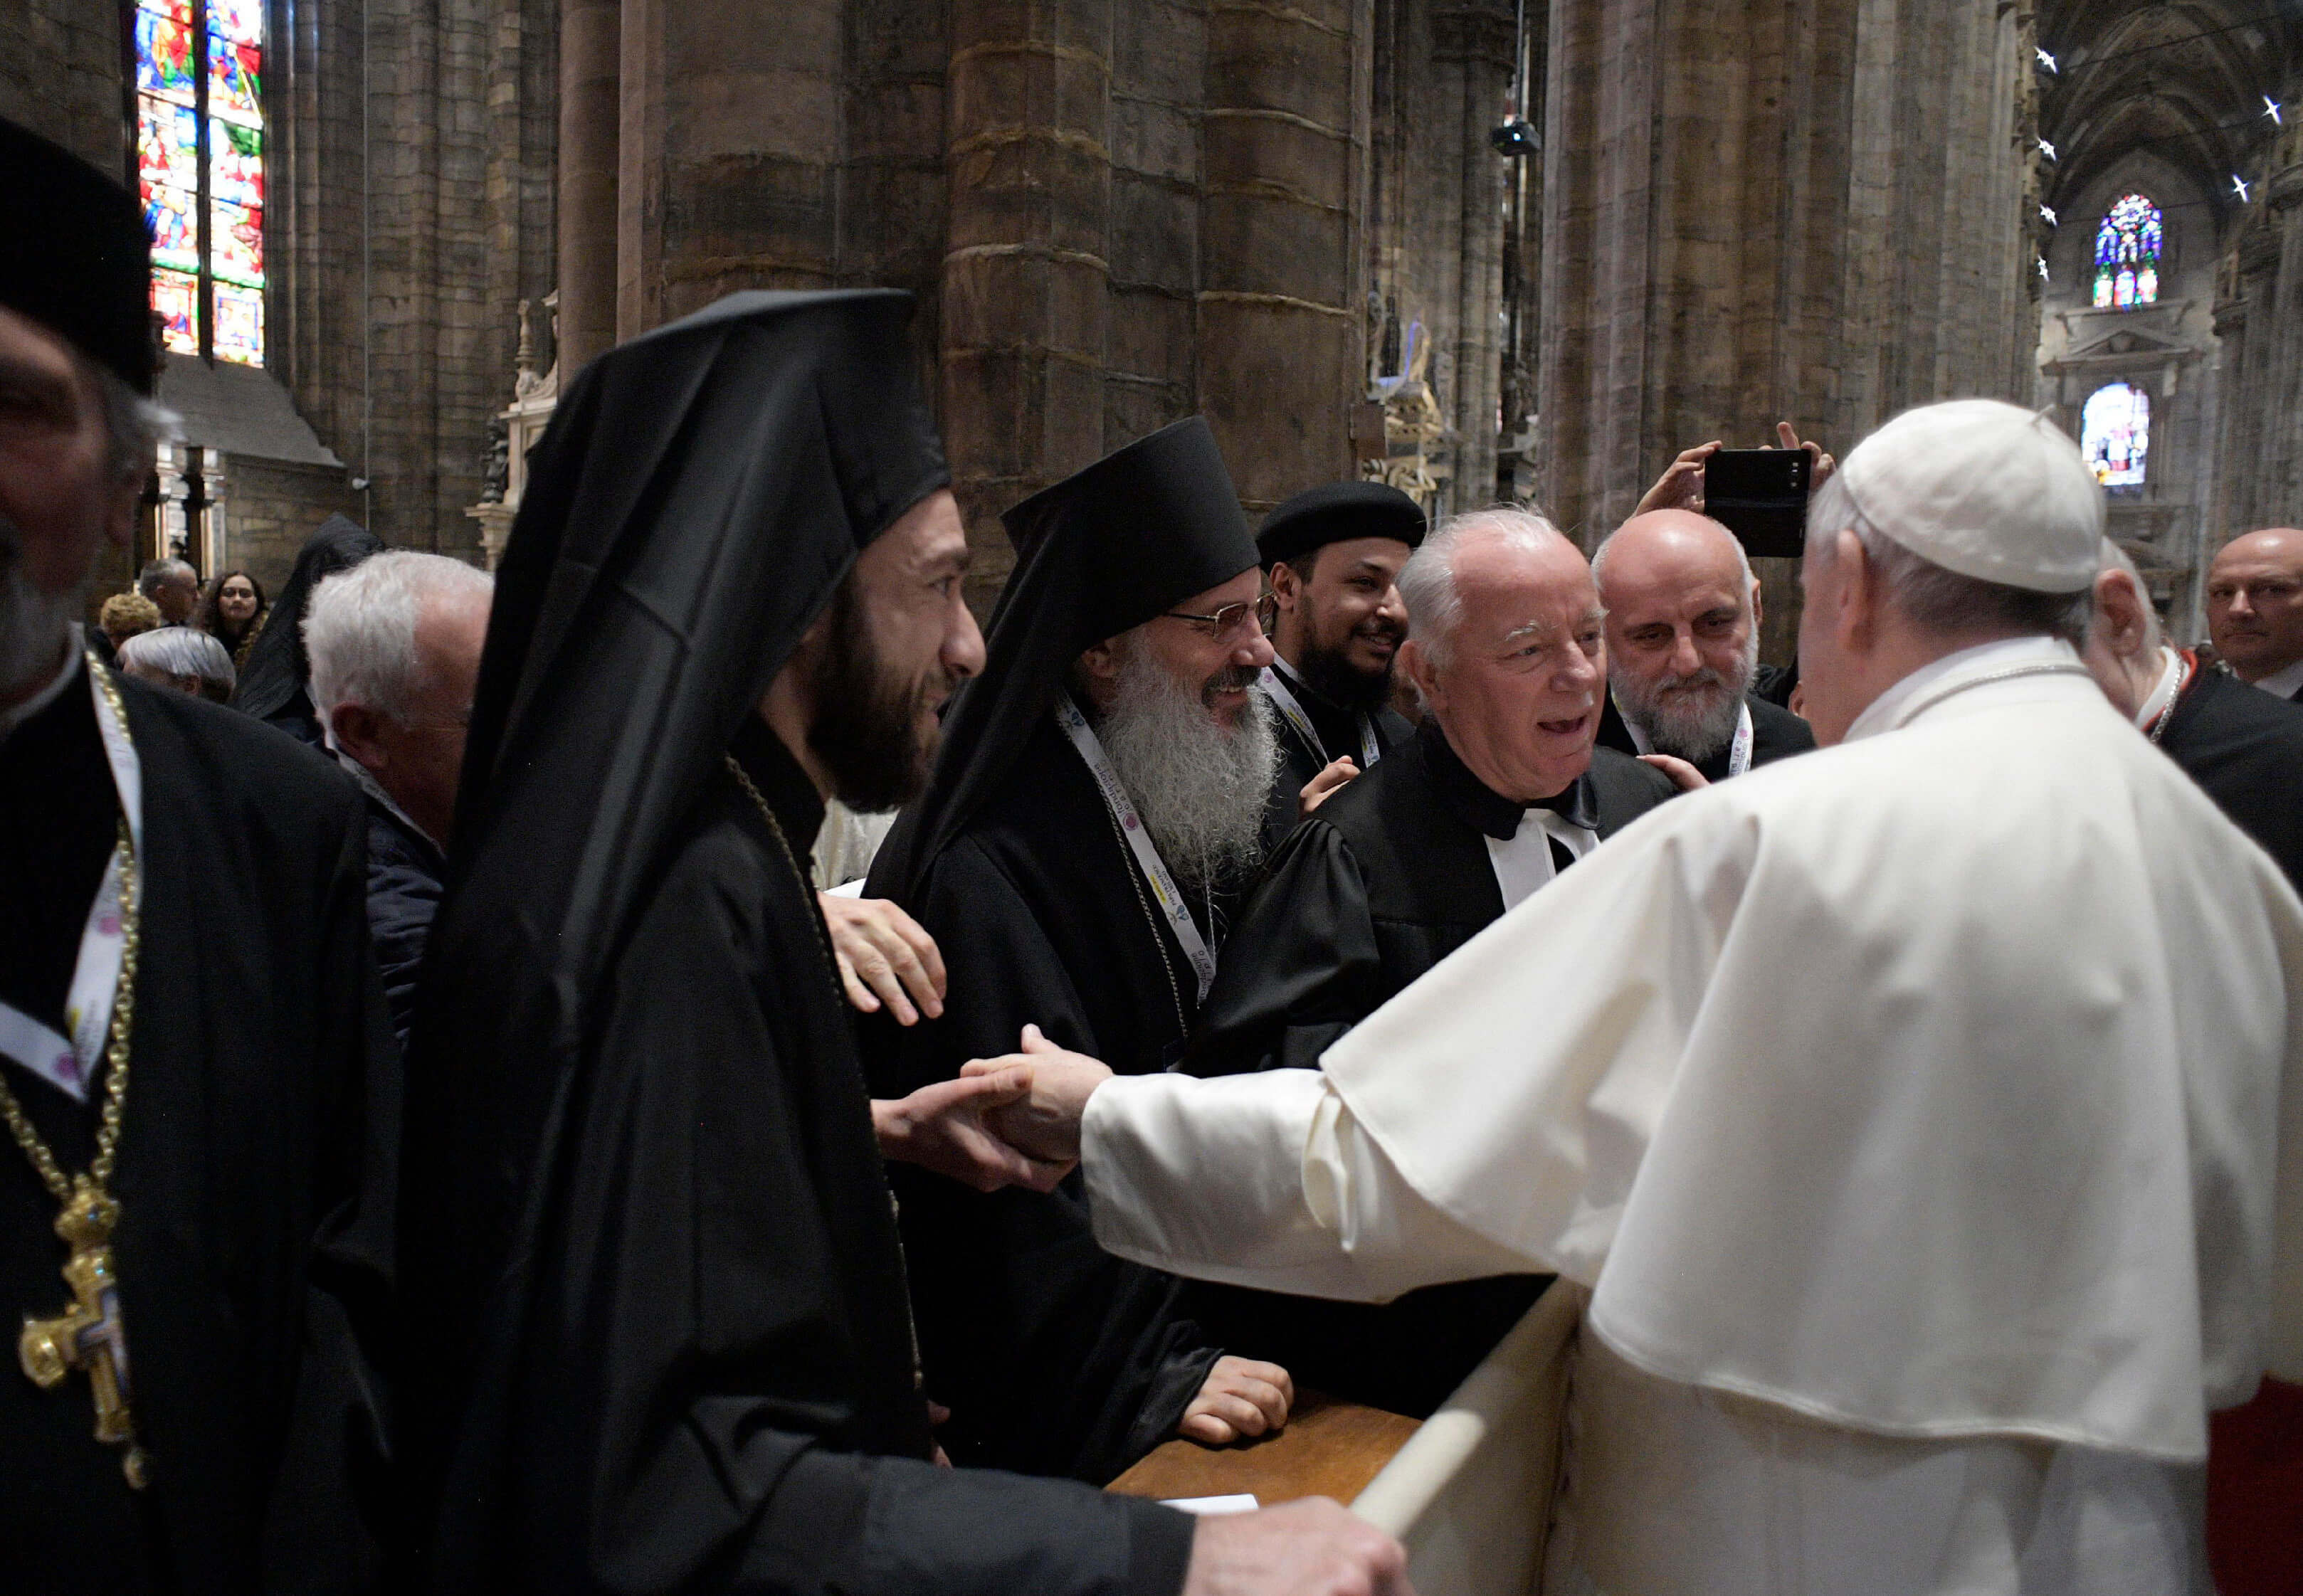 El papa Francisco saluda a los sacerdotes durante una reunión con miembros de la Iglesia Católica, dentro de la Catedral Duomo de Milán. (AP)